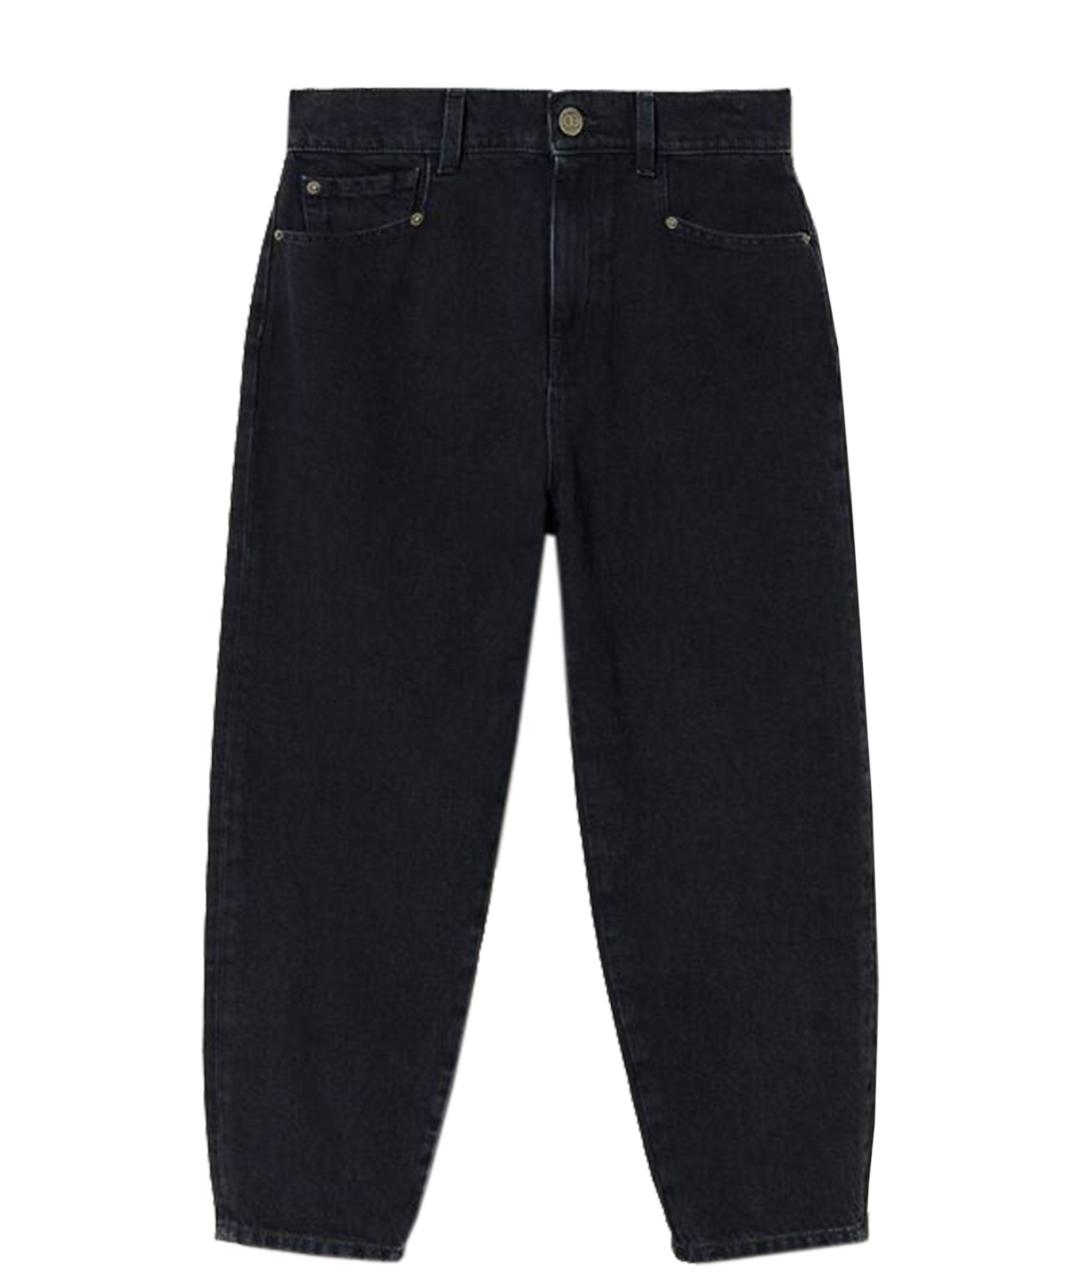 TWIN-SET Черные хлопковые джинсы клеш, фото 1